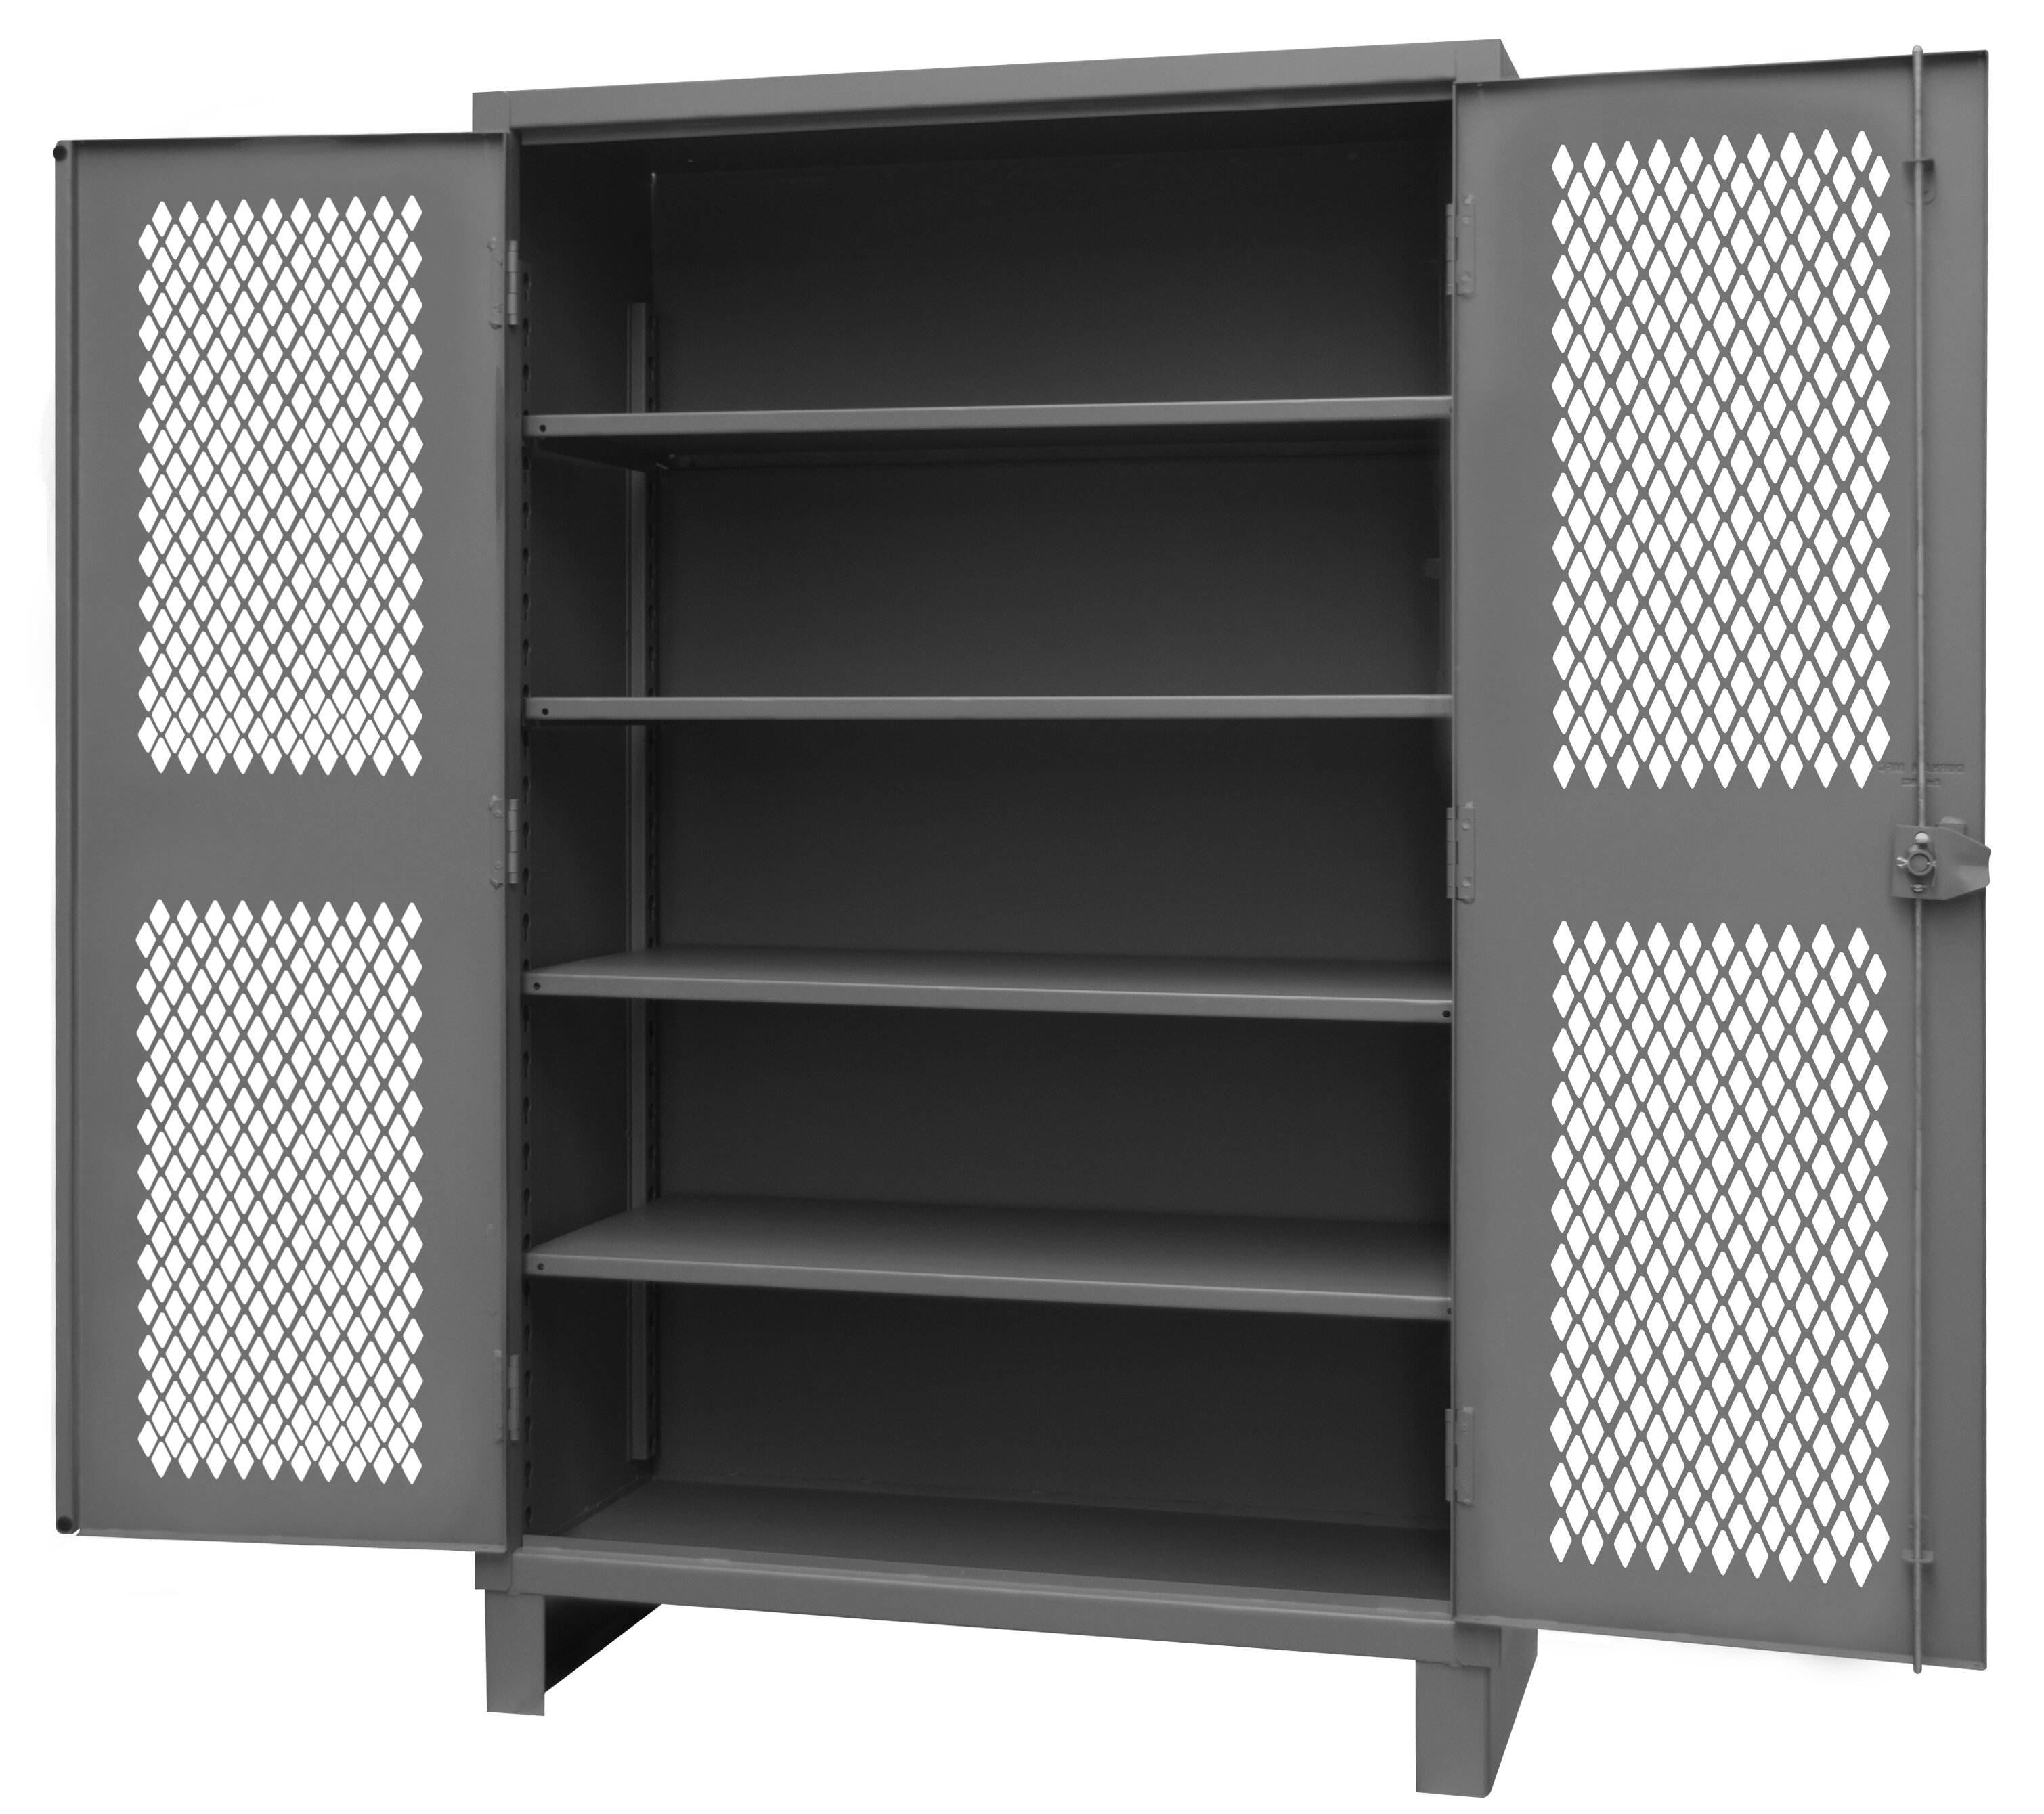 Durham Manufacturing Single Storage Cabinet ( 78'' H x 36'' W x 24